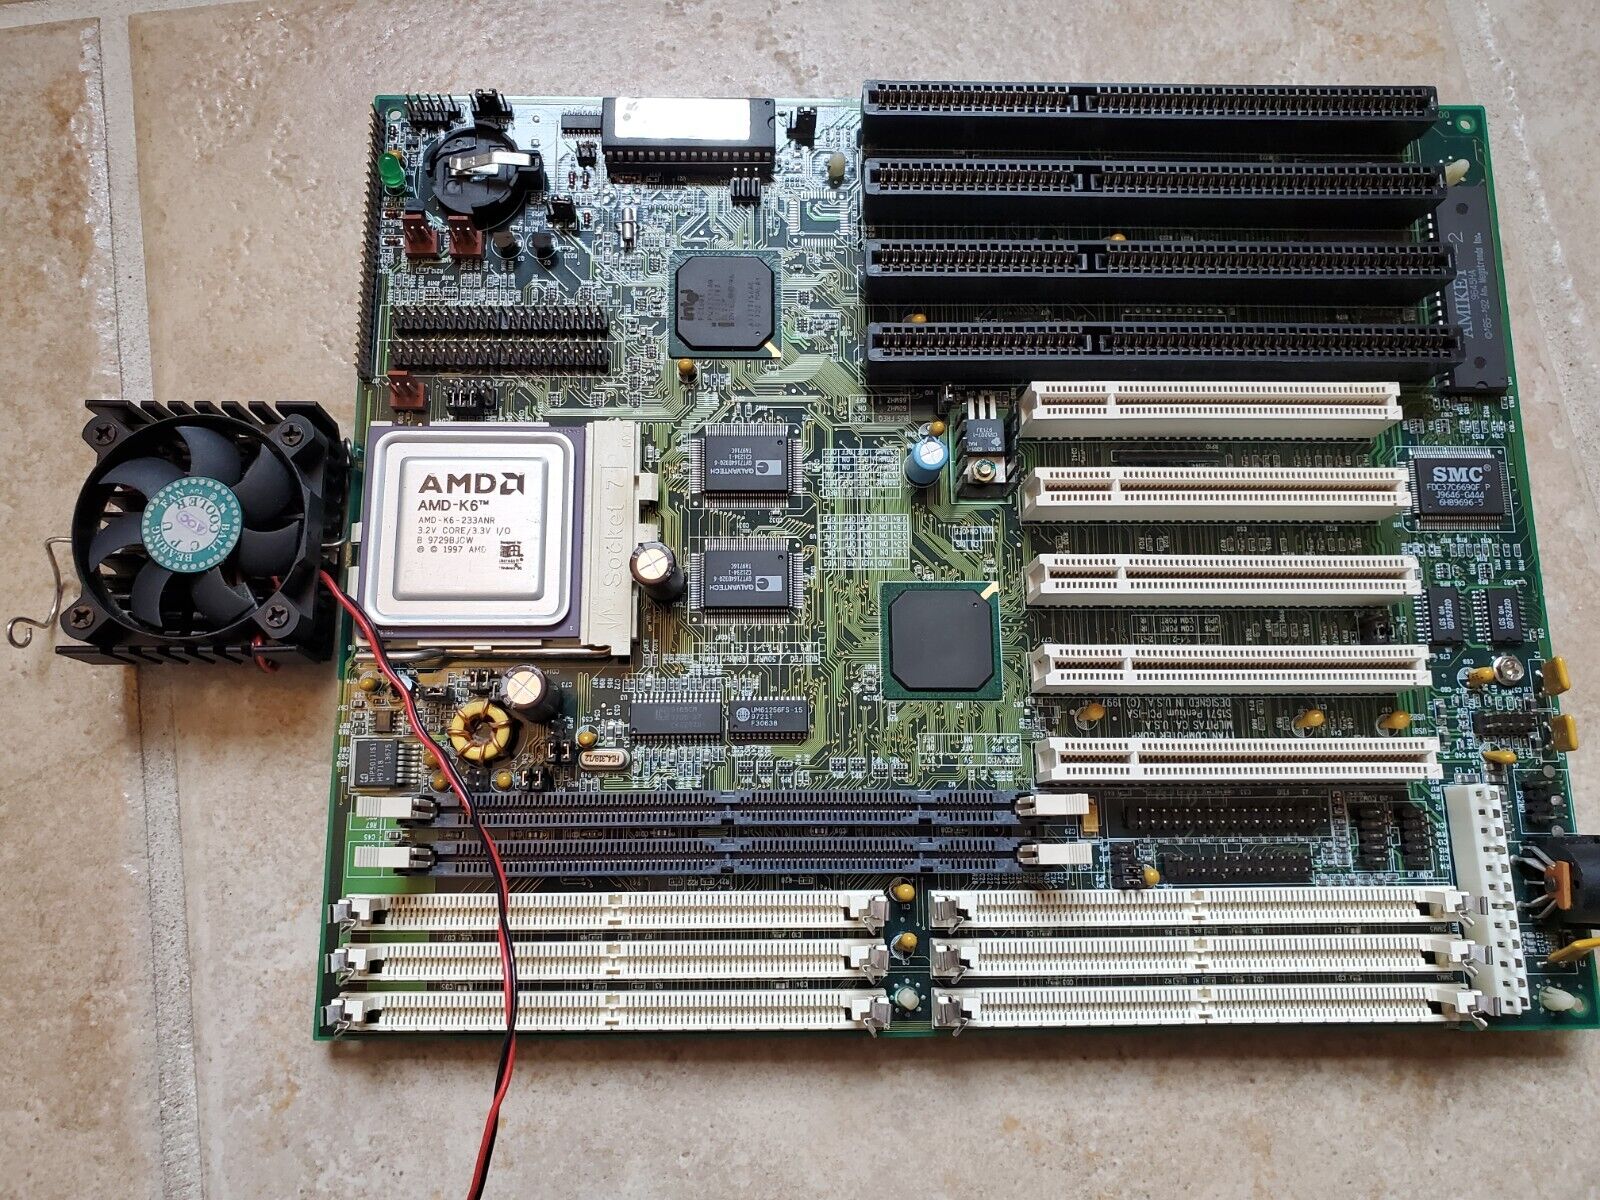 Tyan Titan Turbo Motherboard Unknown Model w/ AMD Socket 7 K6 Processor w/ RAM